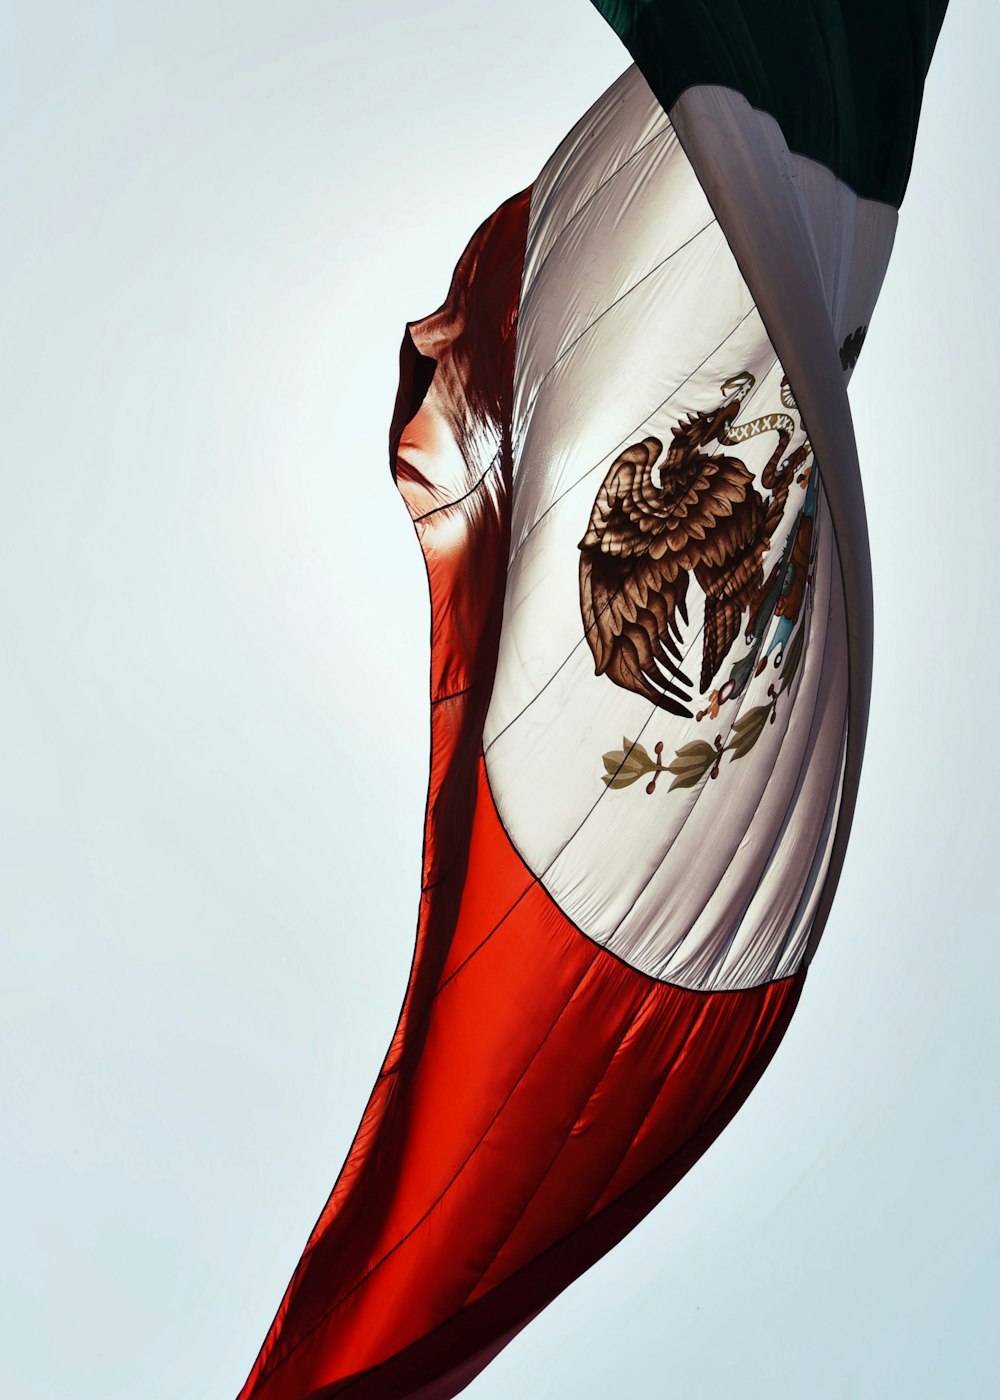 Bandera mexicana, saber horario